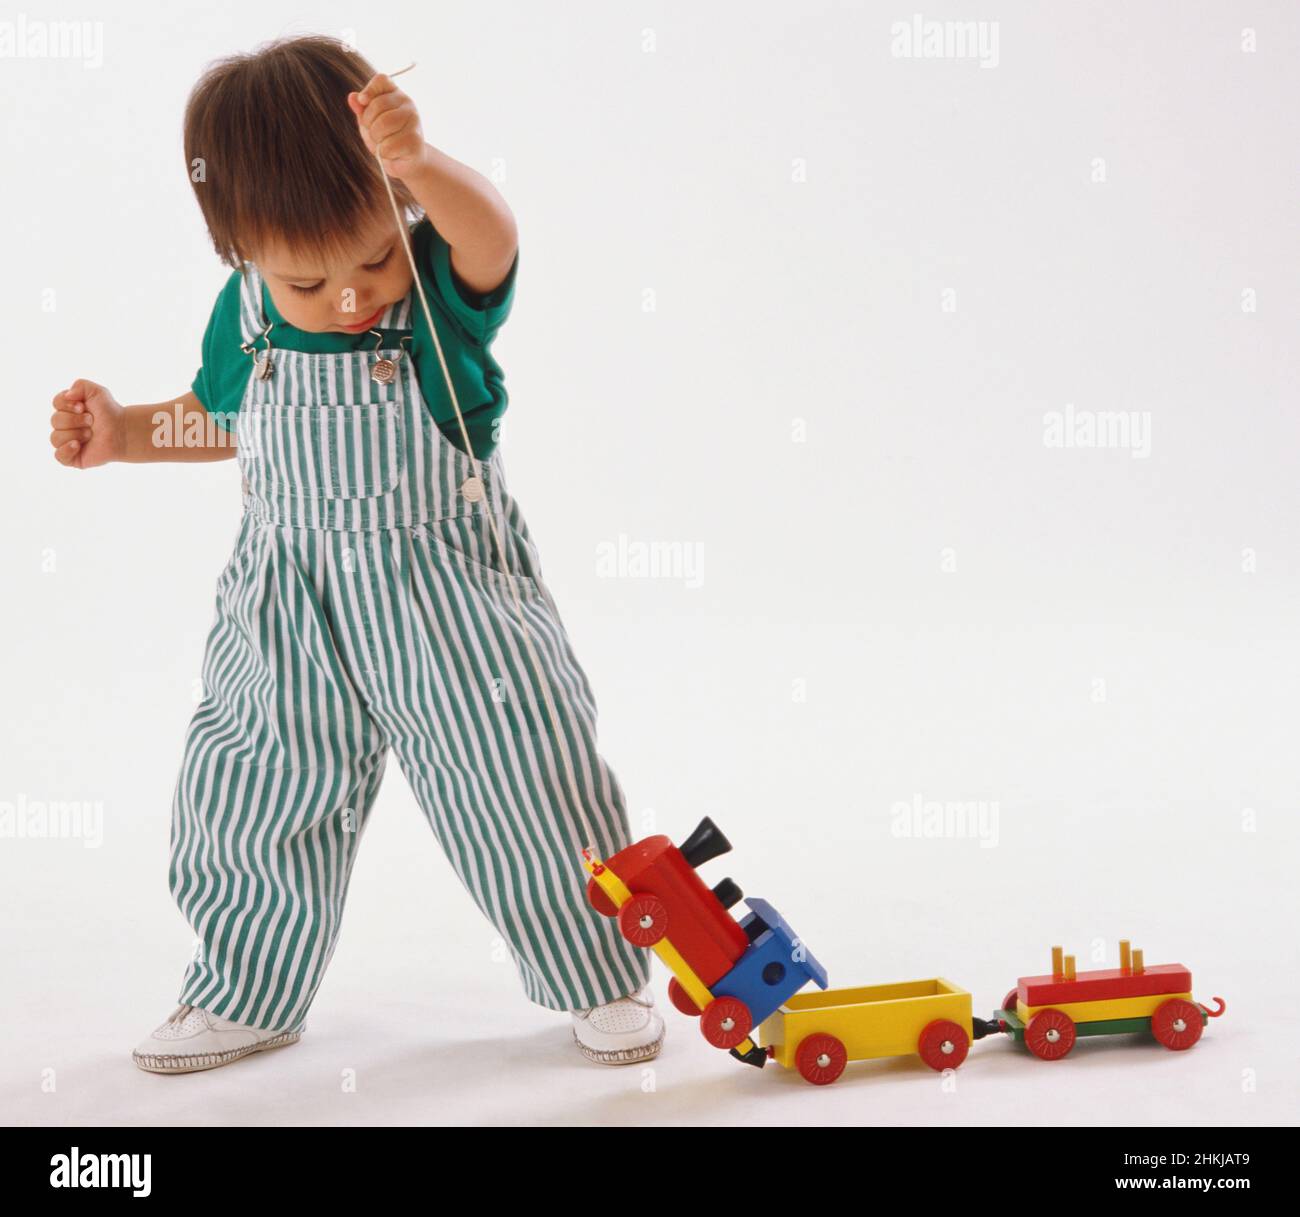 Bébé tire le train de jouet en bois sur un morceau de ficelle Photo Stock -  Alamy